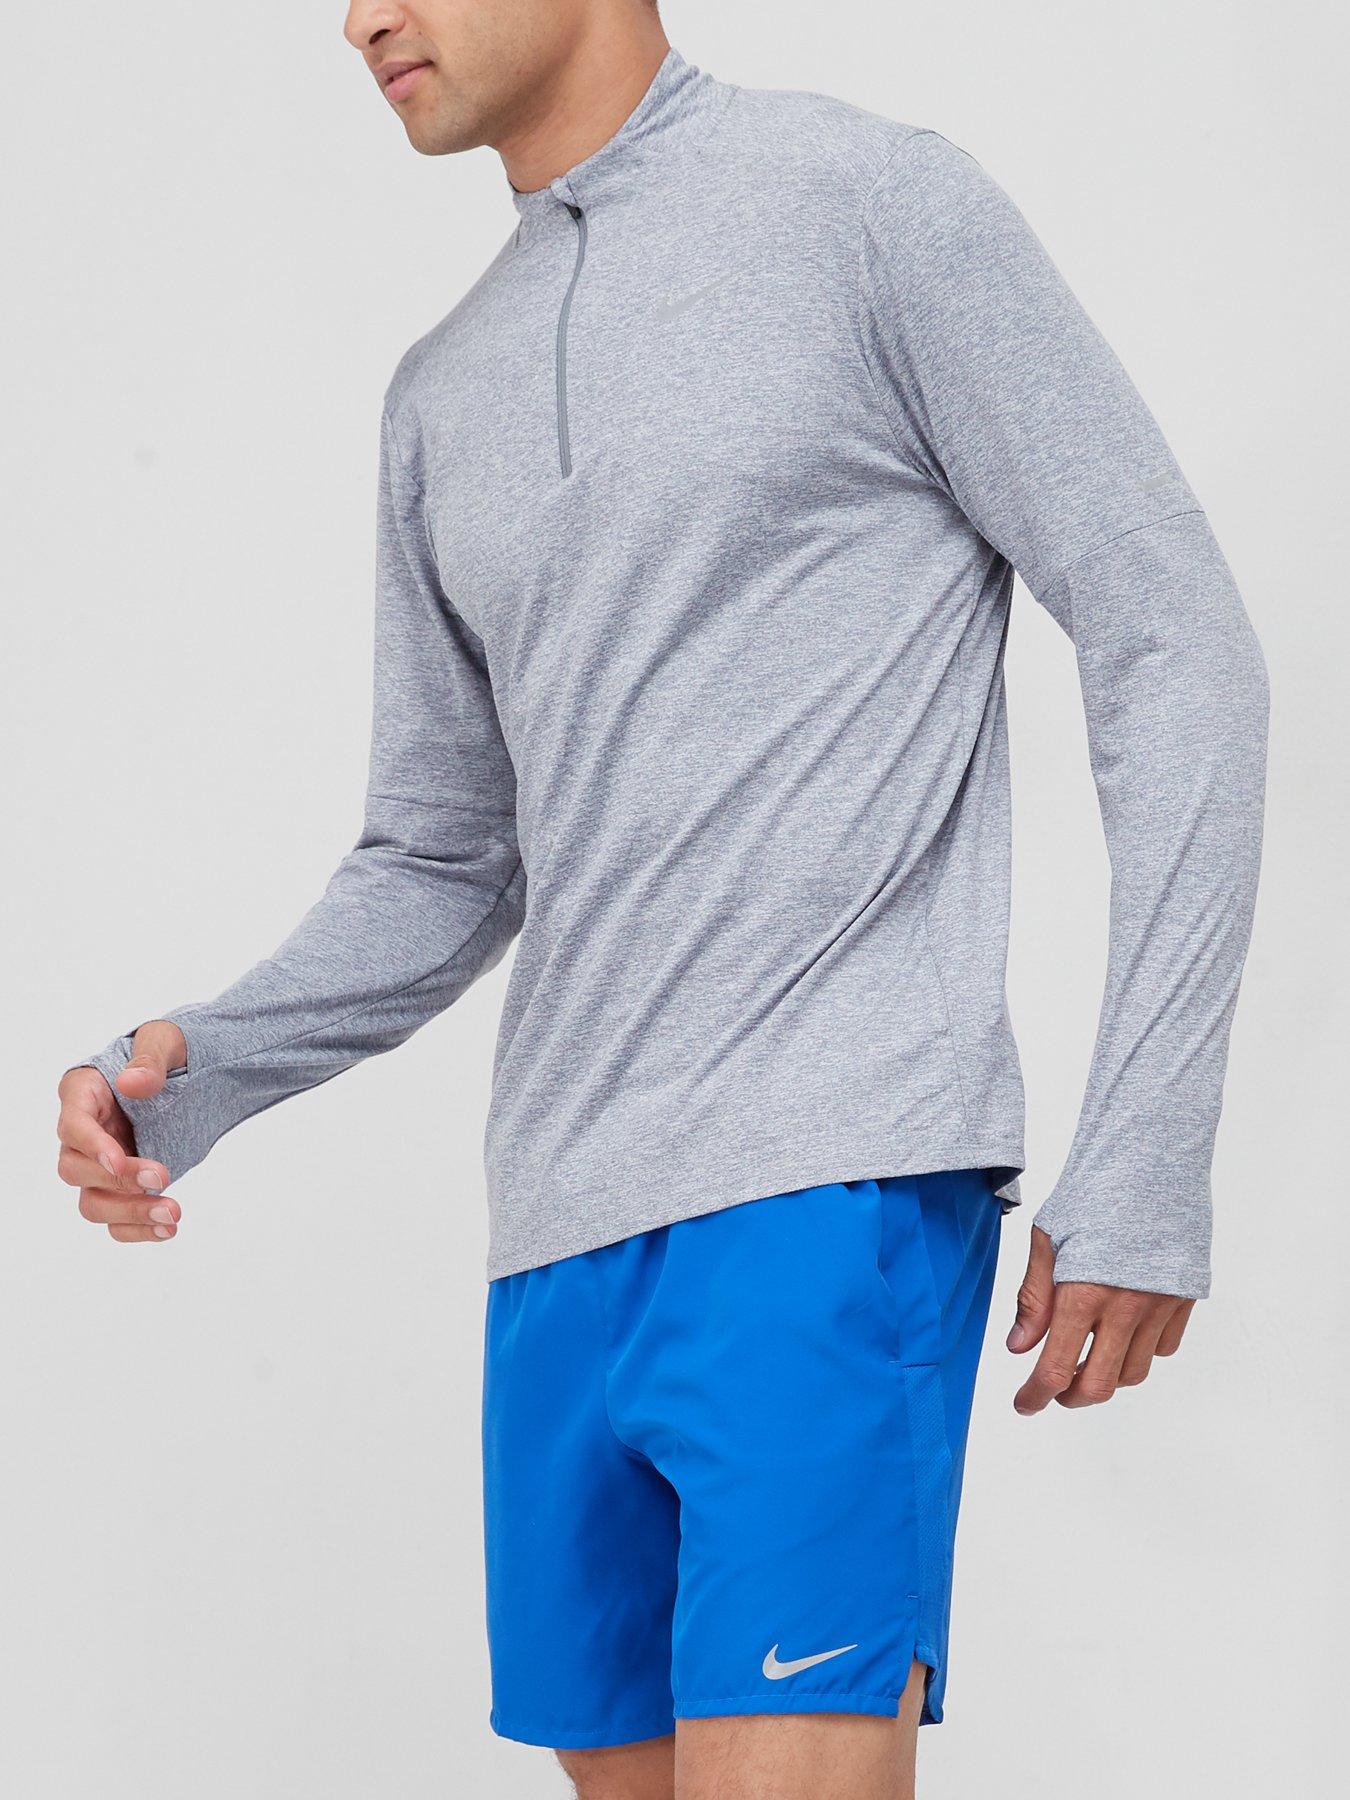 Hoodies & Sweatshirts Run Dri Fit Element Top 1/2 Zip Top - Grey